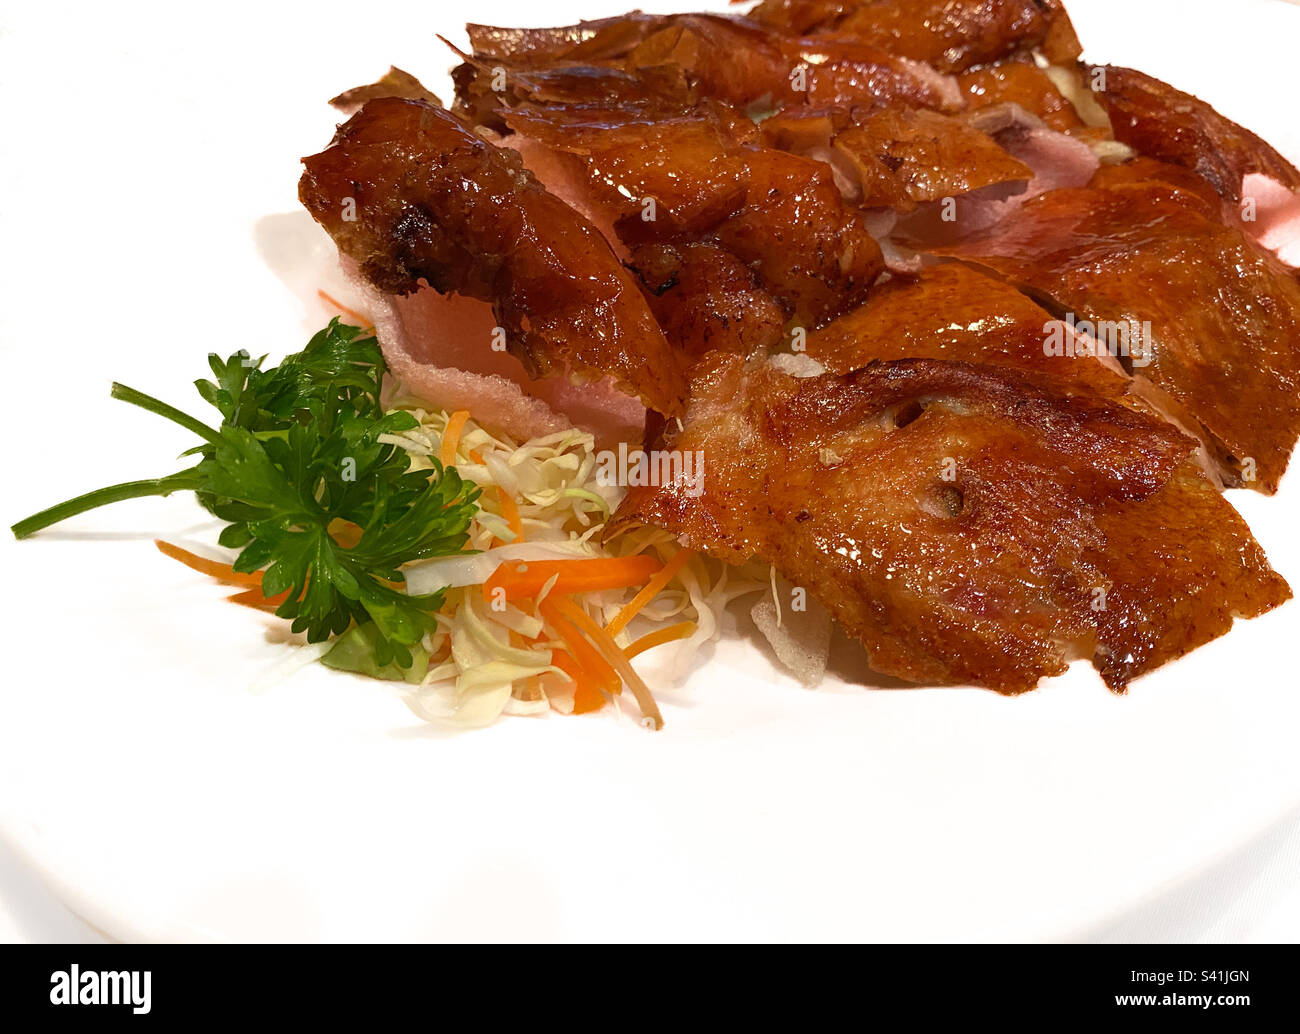 Teller mit knuspriger Peking-Ente auf einem Bett aus Gemüse und Garnelenchips, eine traditionelle kulinarische Delikatesse der chinesischen Küche Stockfoto